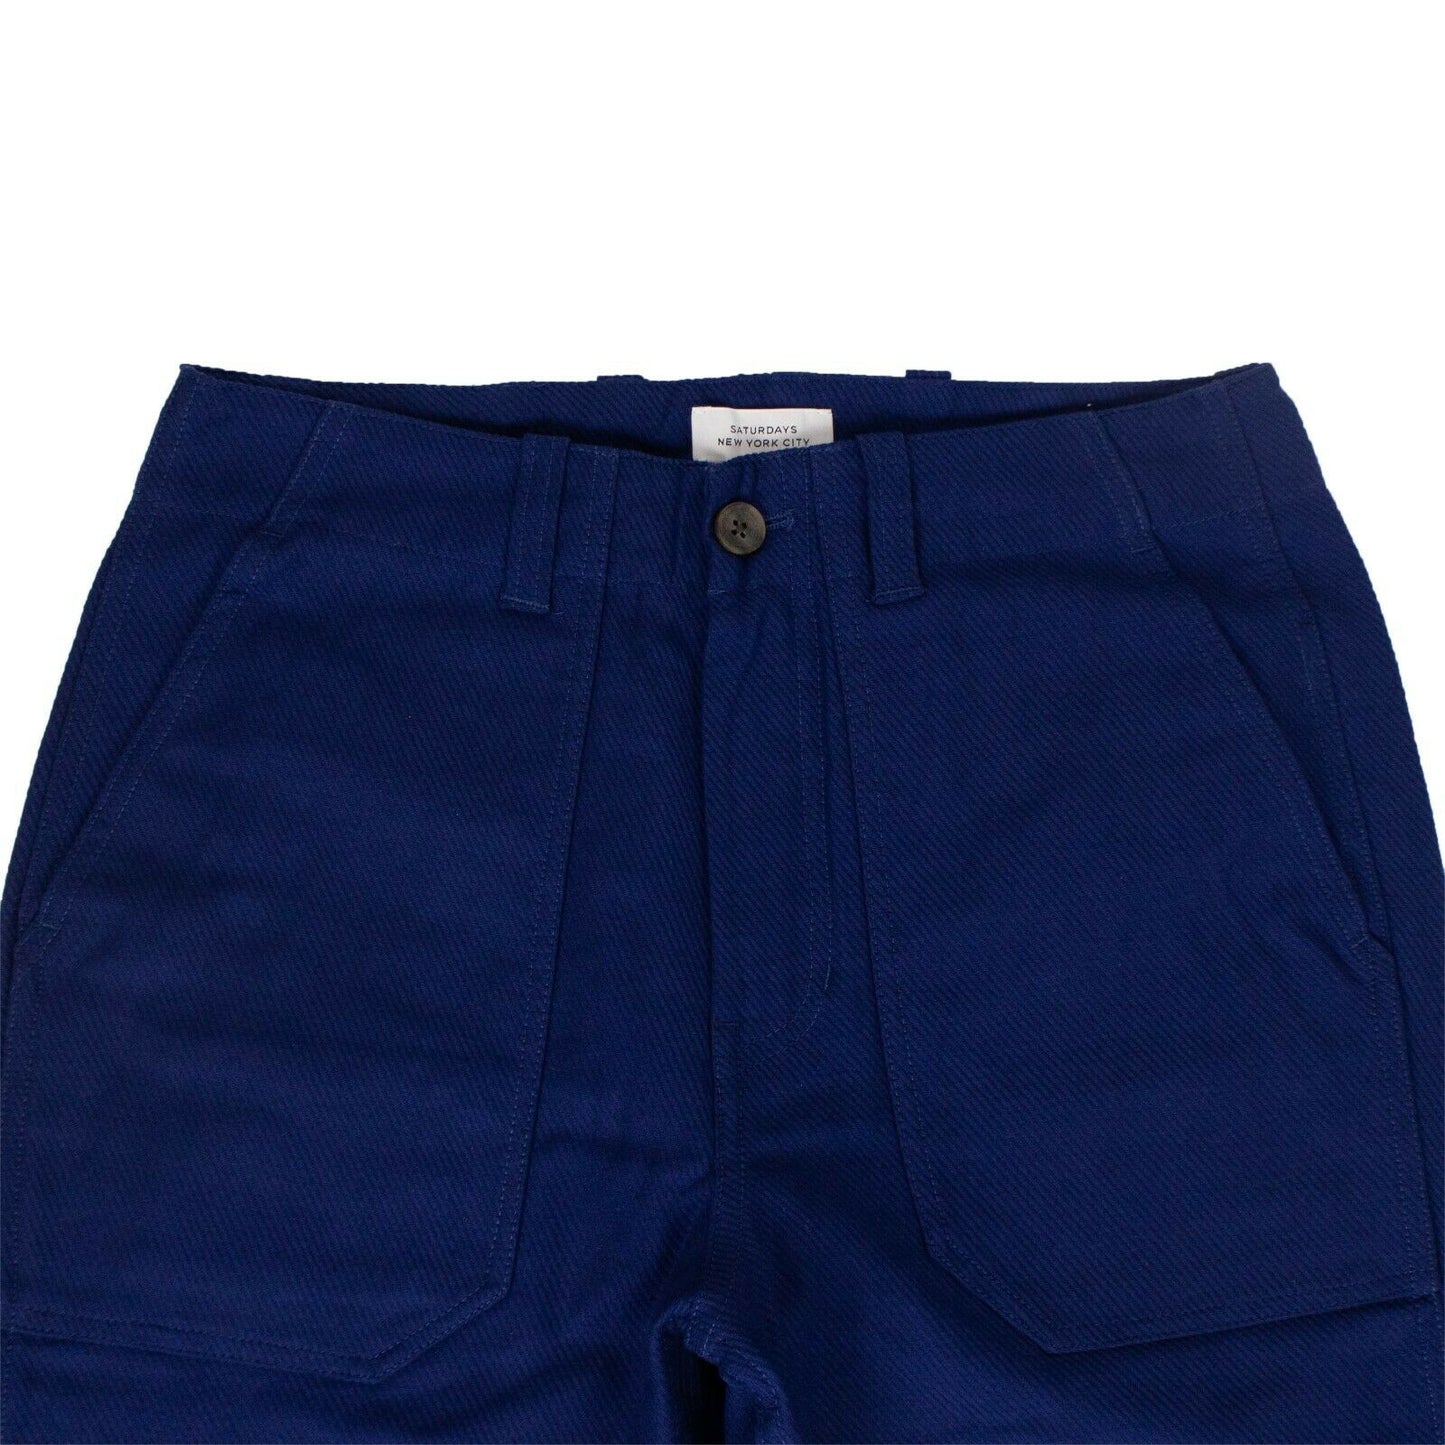 Saturdays Nyc Cotton Decatur Bellow Pants - Cobalt Blue